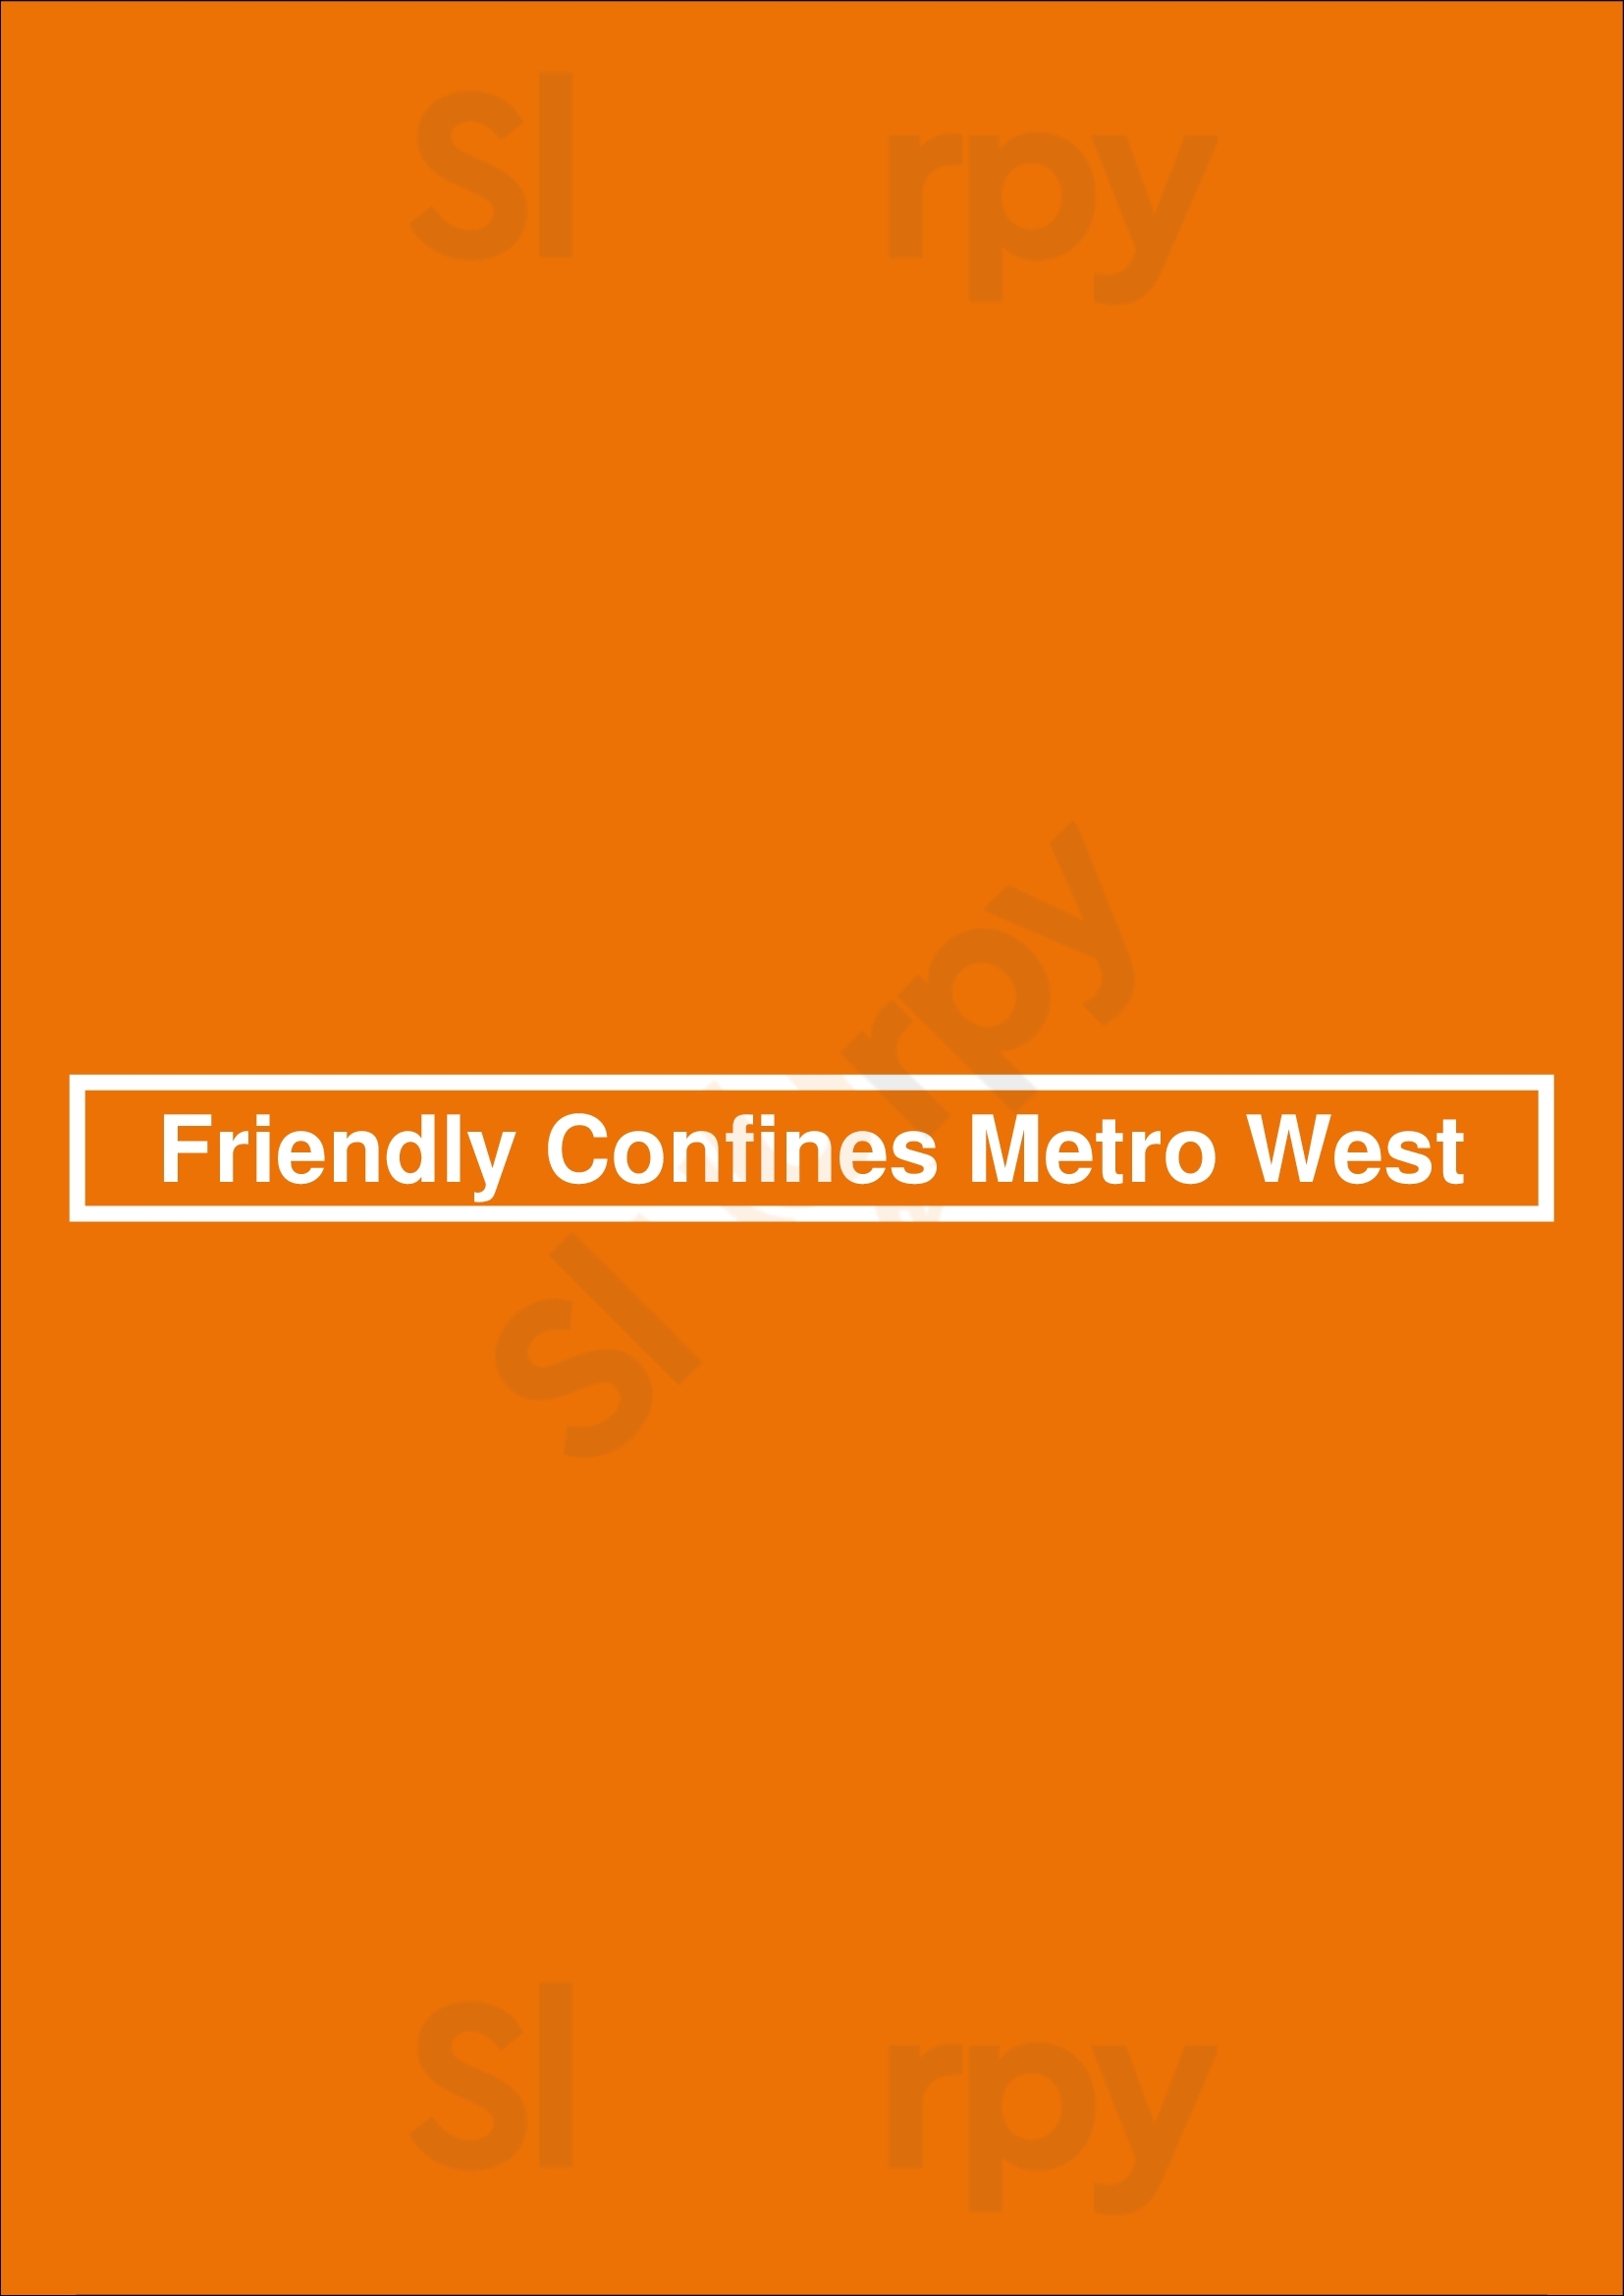 Friendly Confines Metro West Orlando Menu - 1